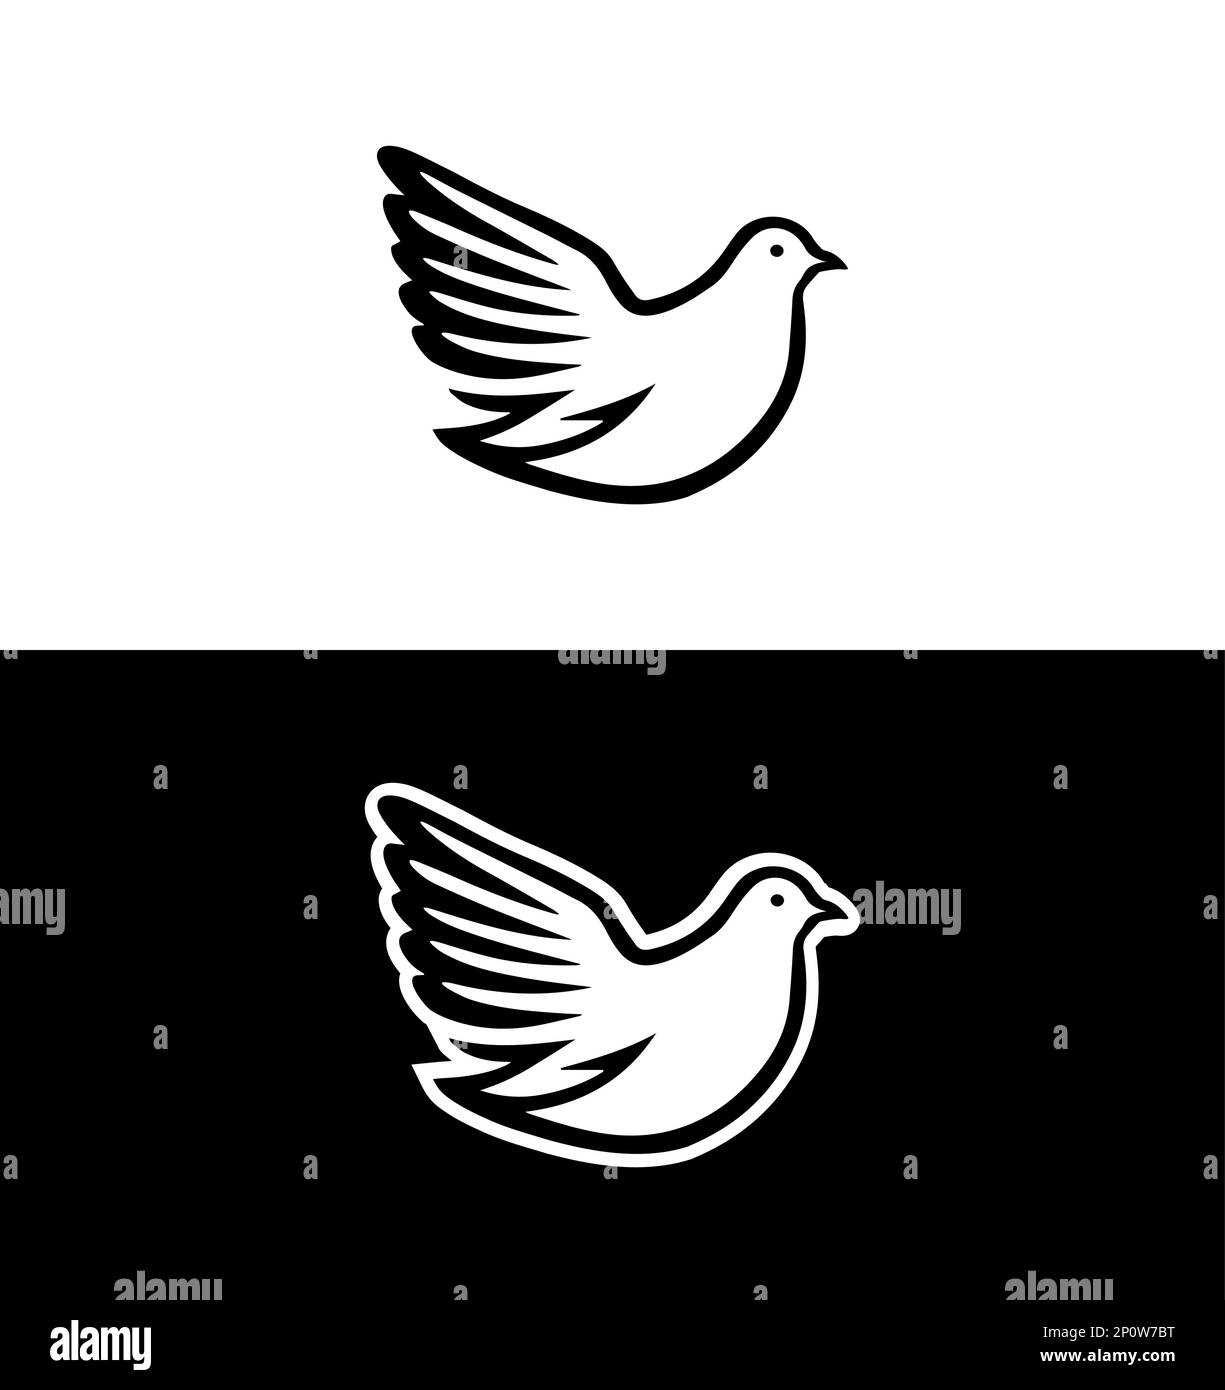 Illustration de l'emblème Dove Vector isolée sur fond blanc et noir. Symbole de la paix et du ciel. Magnifique design de White Flying Free Bird. Illustration de Vecteur